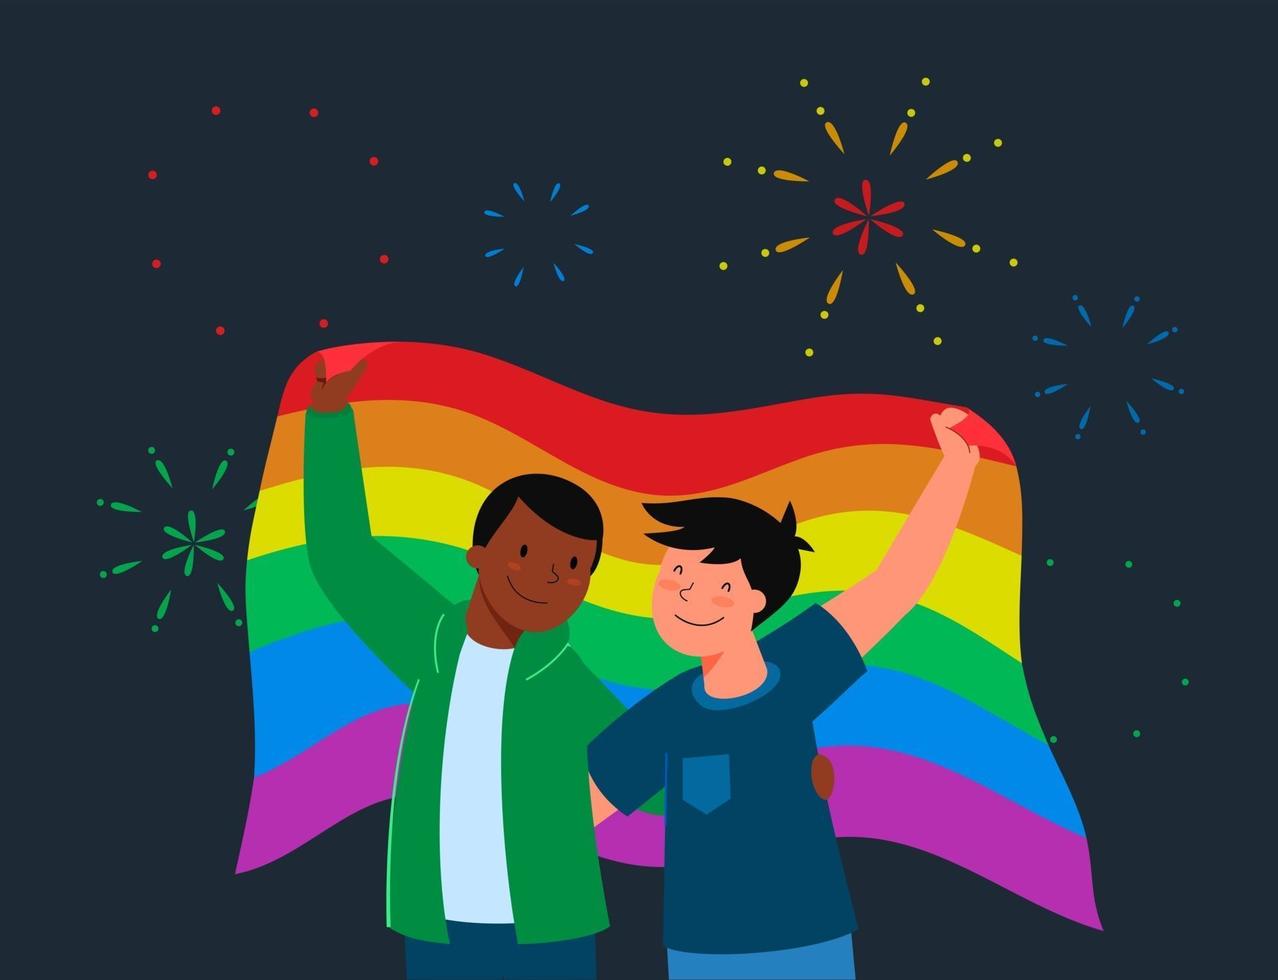 conceito de festival do orgulho lgbt prade. casal homossexual masculino segurando a bandeira lgbt. ilustração em vetor personagem plana dos desenhos animados.